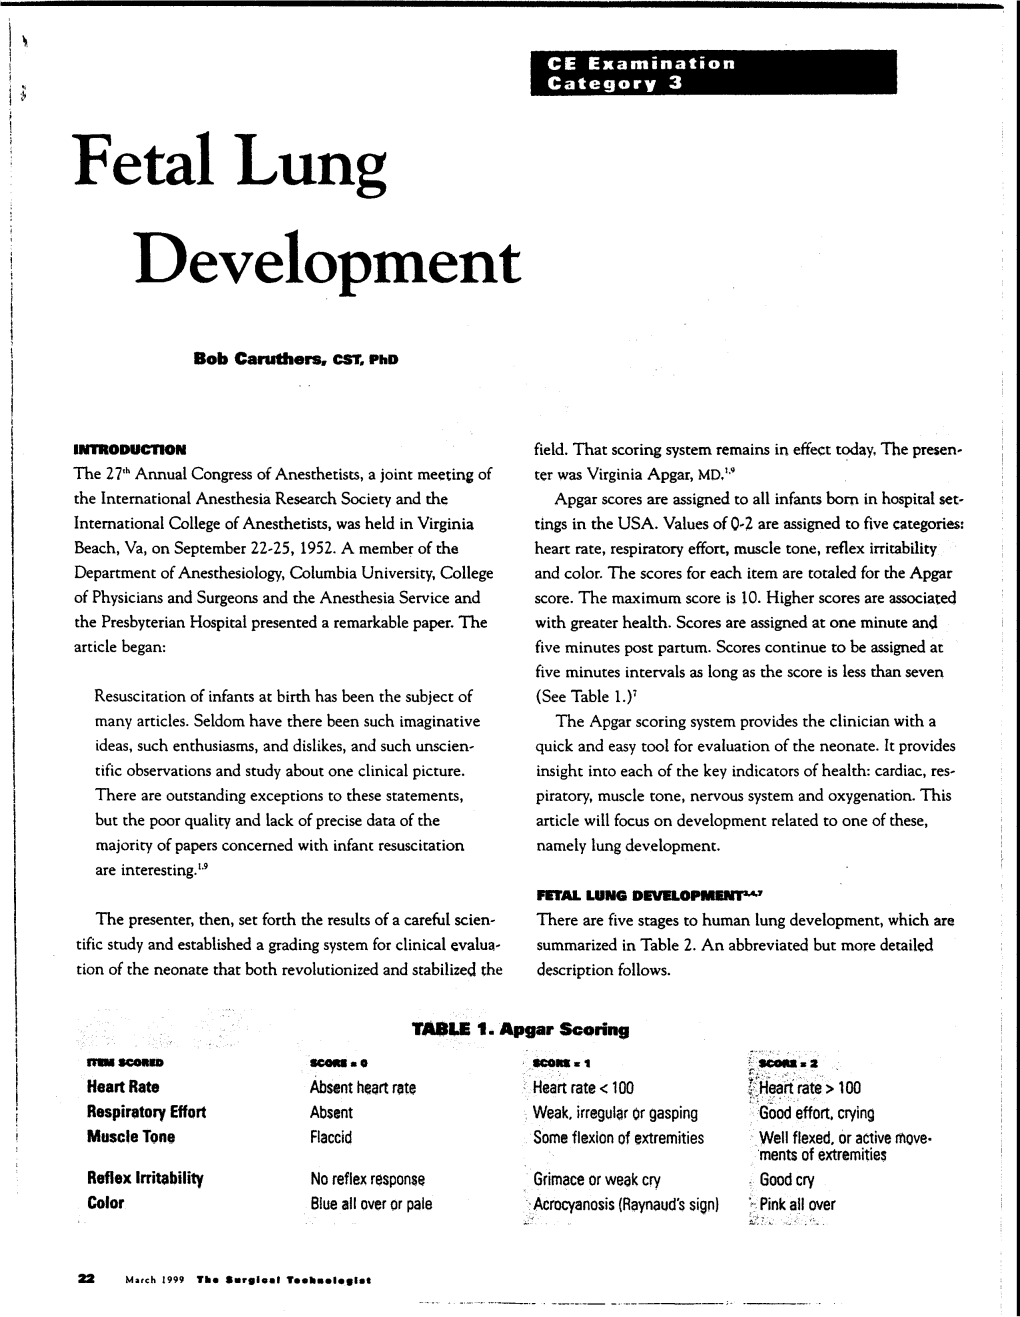 Fetal Lung Development